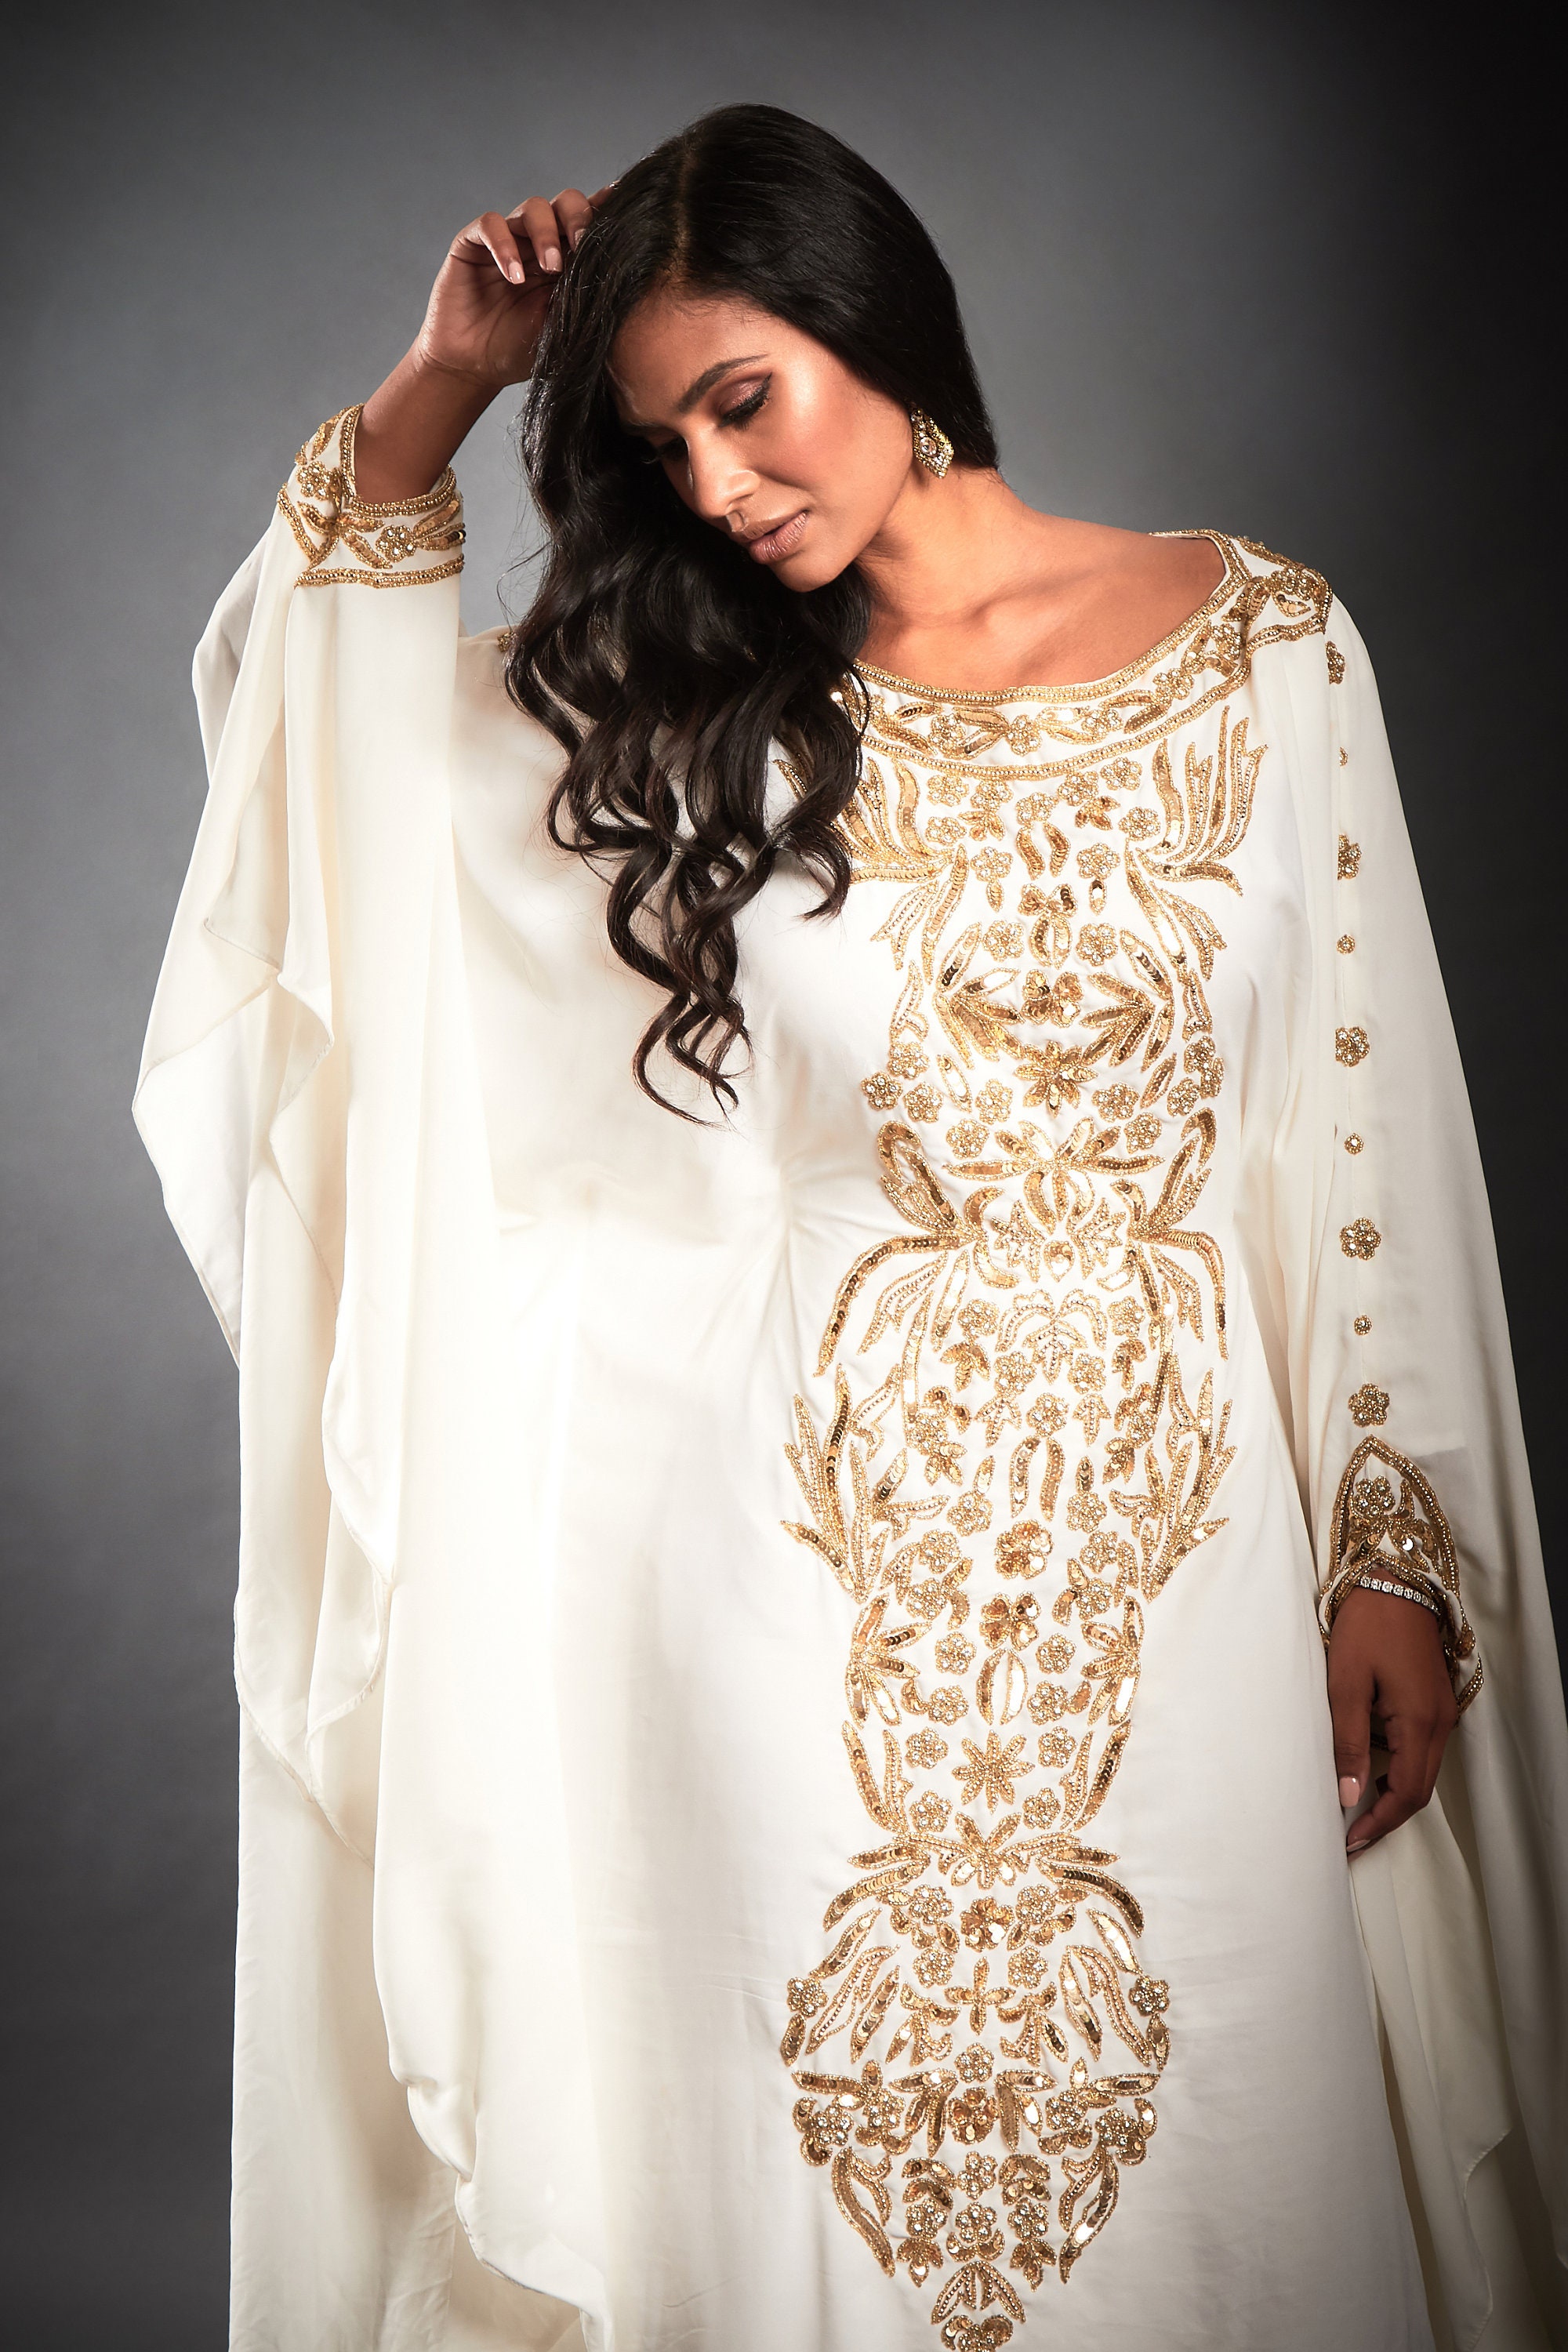 Nahla Abaya Caftan Long Gold Embellished Dress Kaftan Maxi - Etsy UK